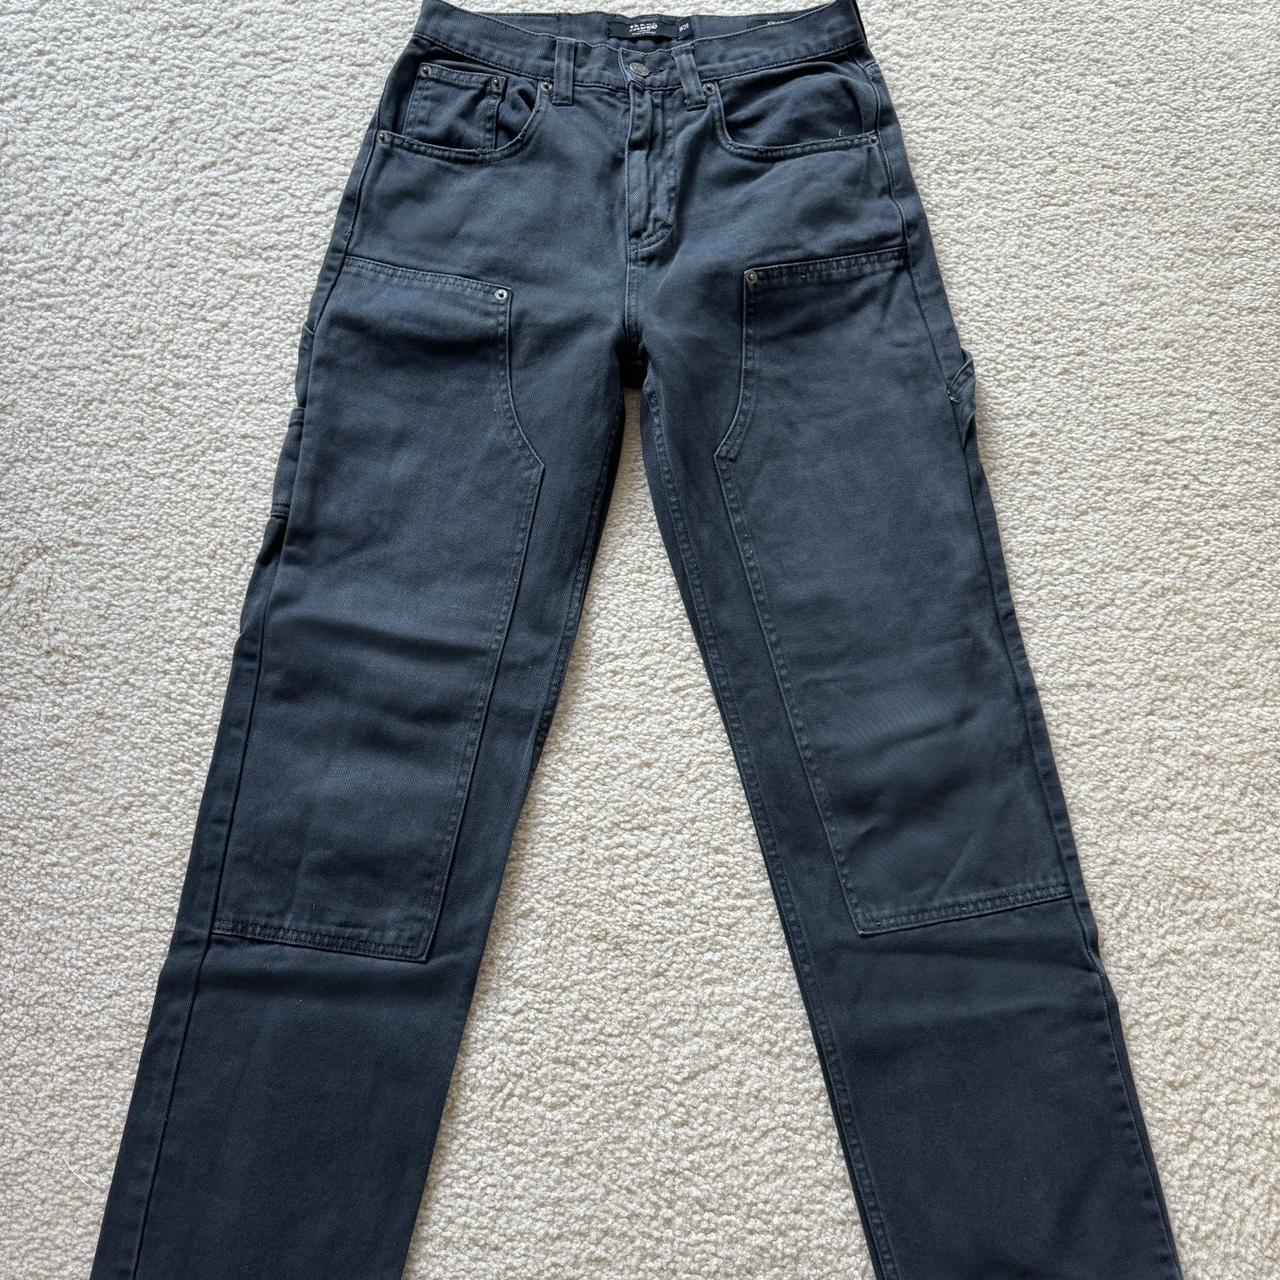 Washed Black Carpenter Jeans